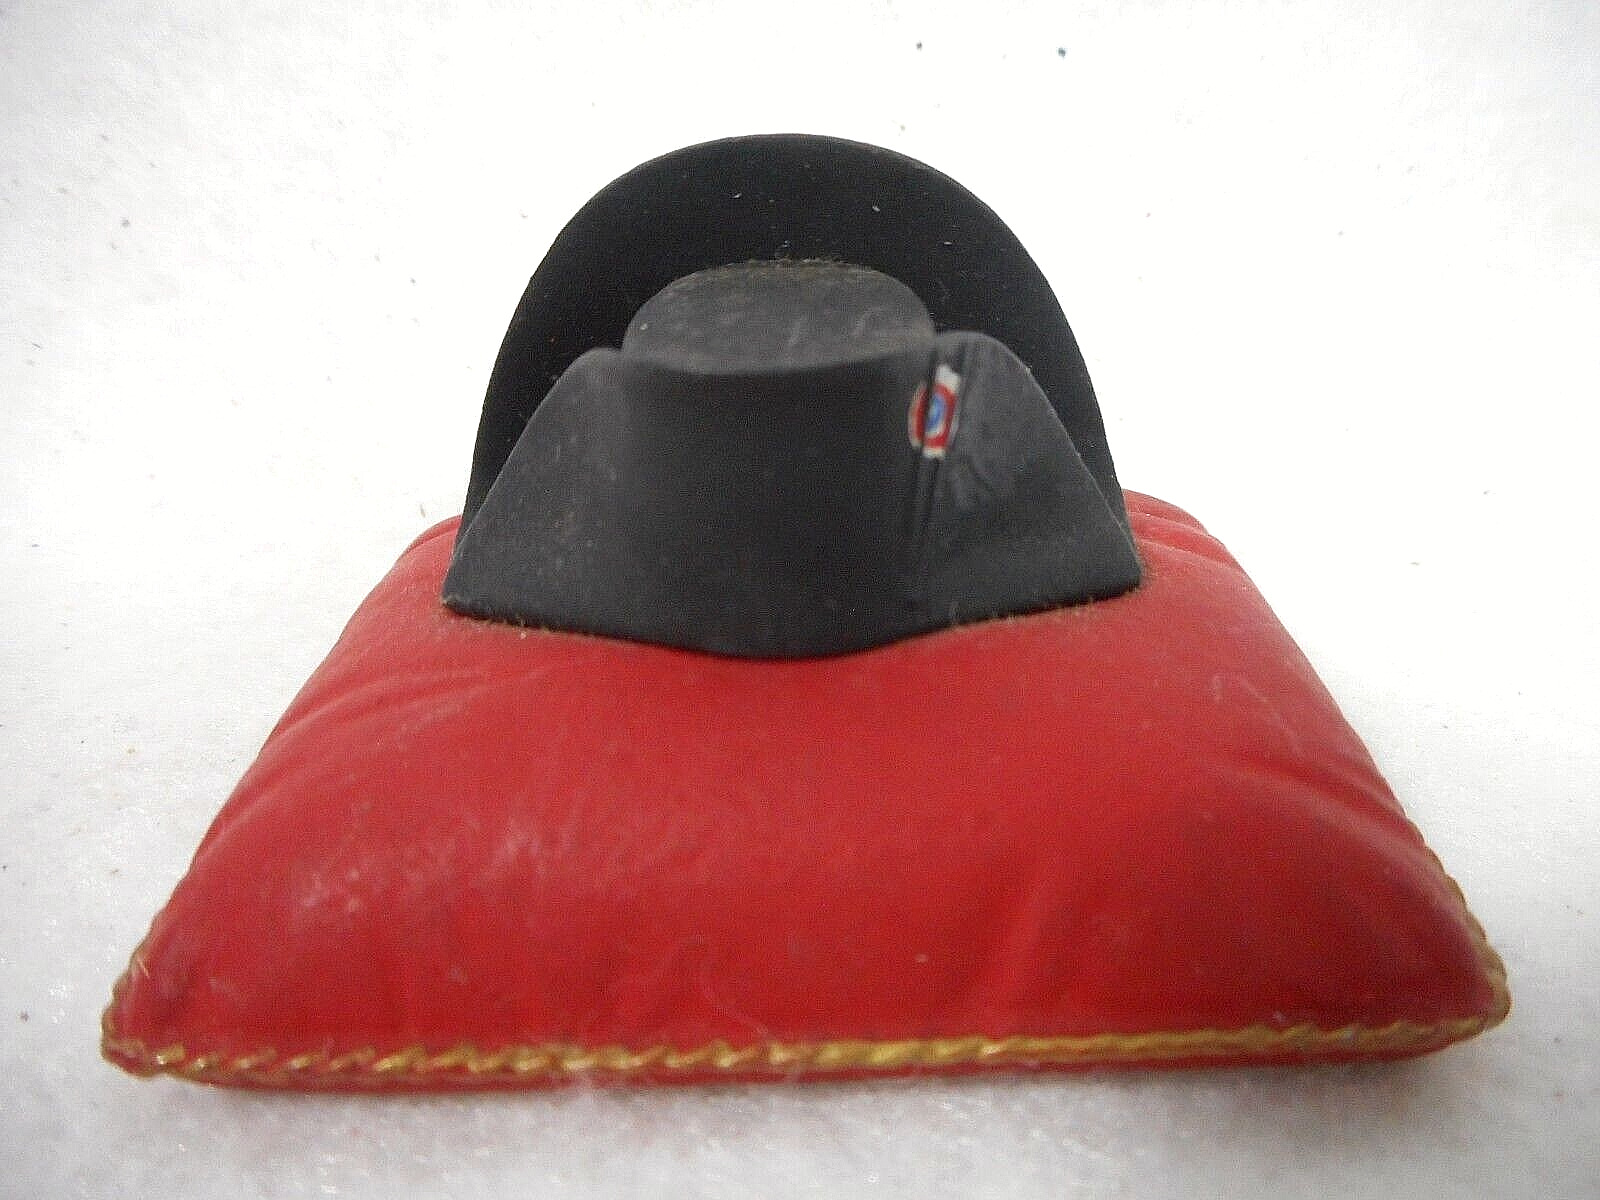 Rare Antique Napoleon Bonaparte Metal Paperweight of His Hat